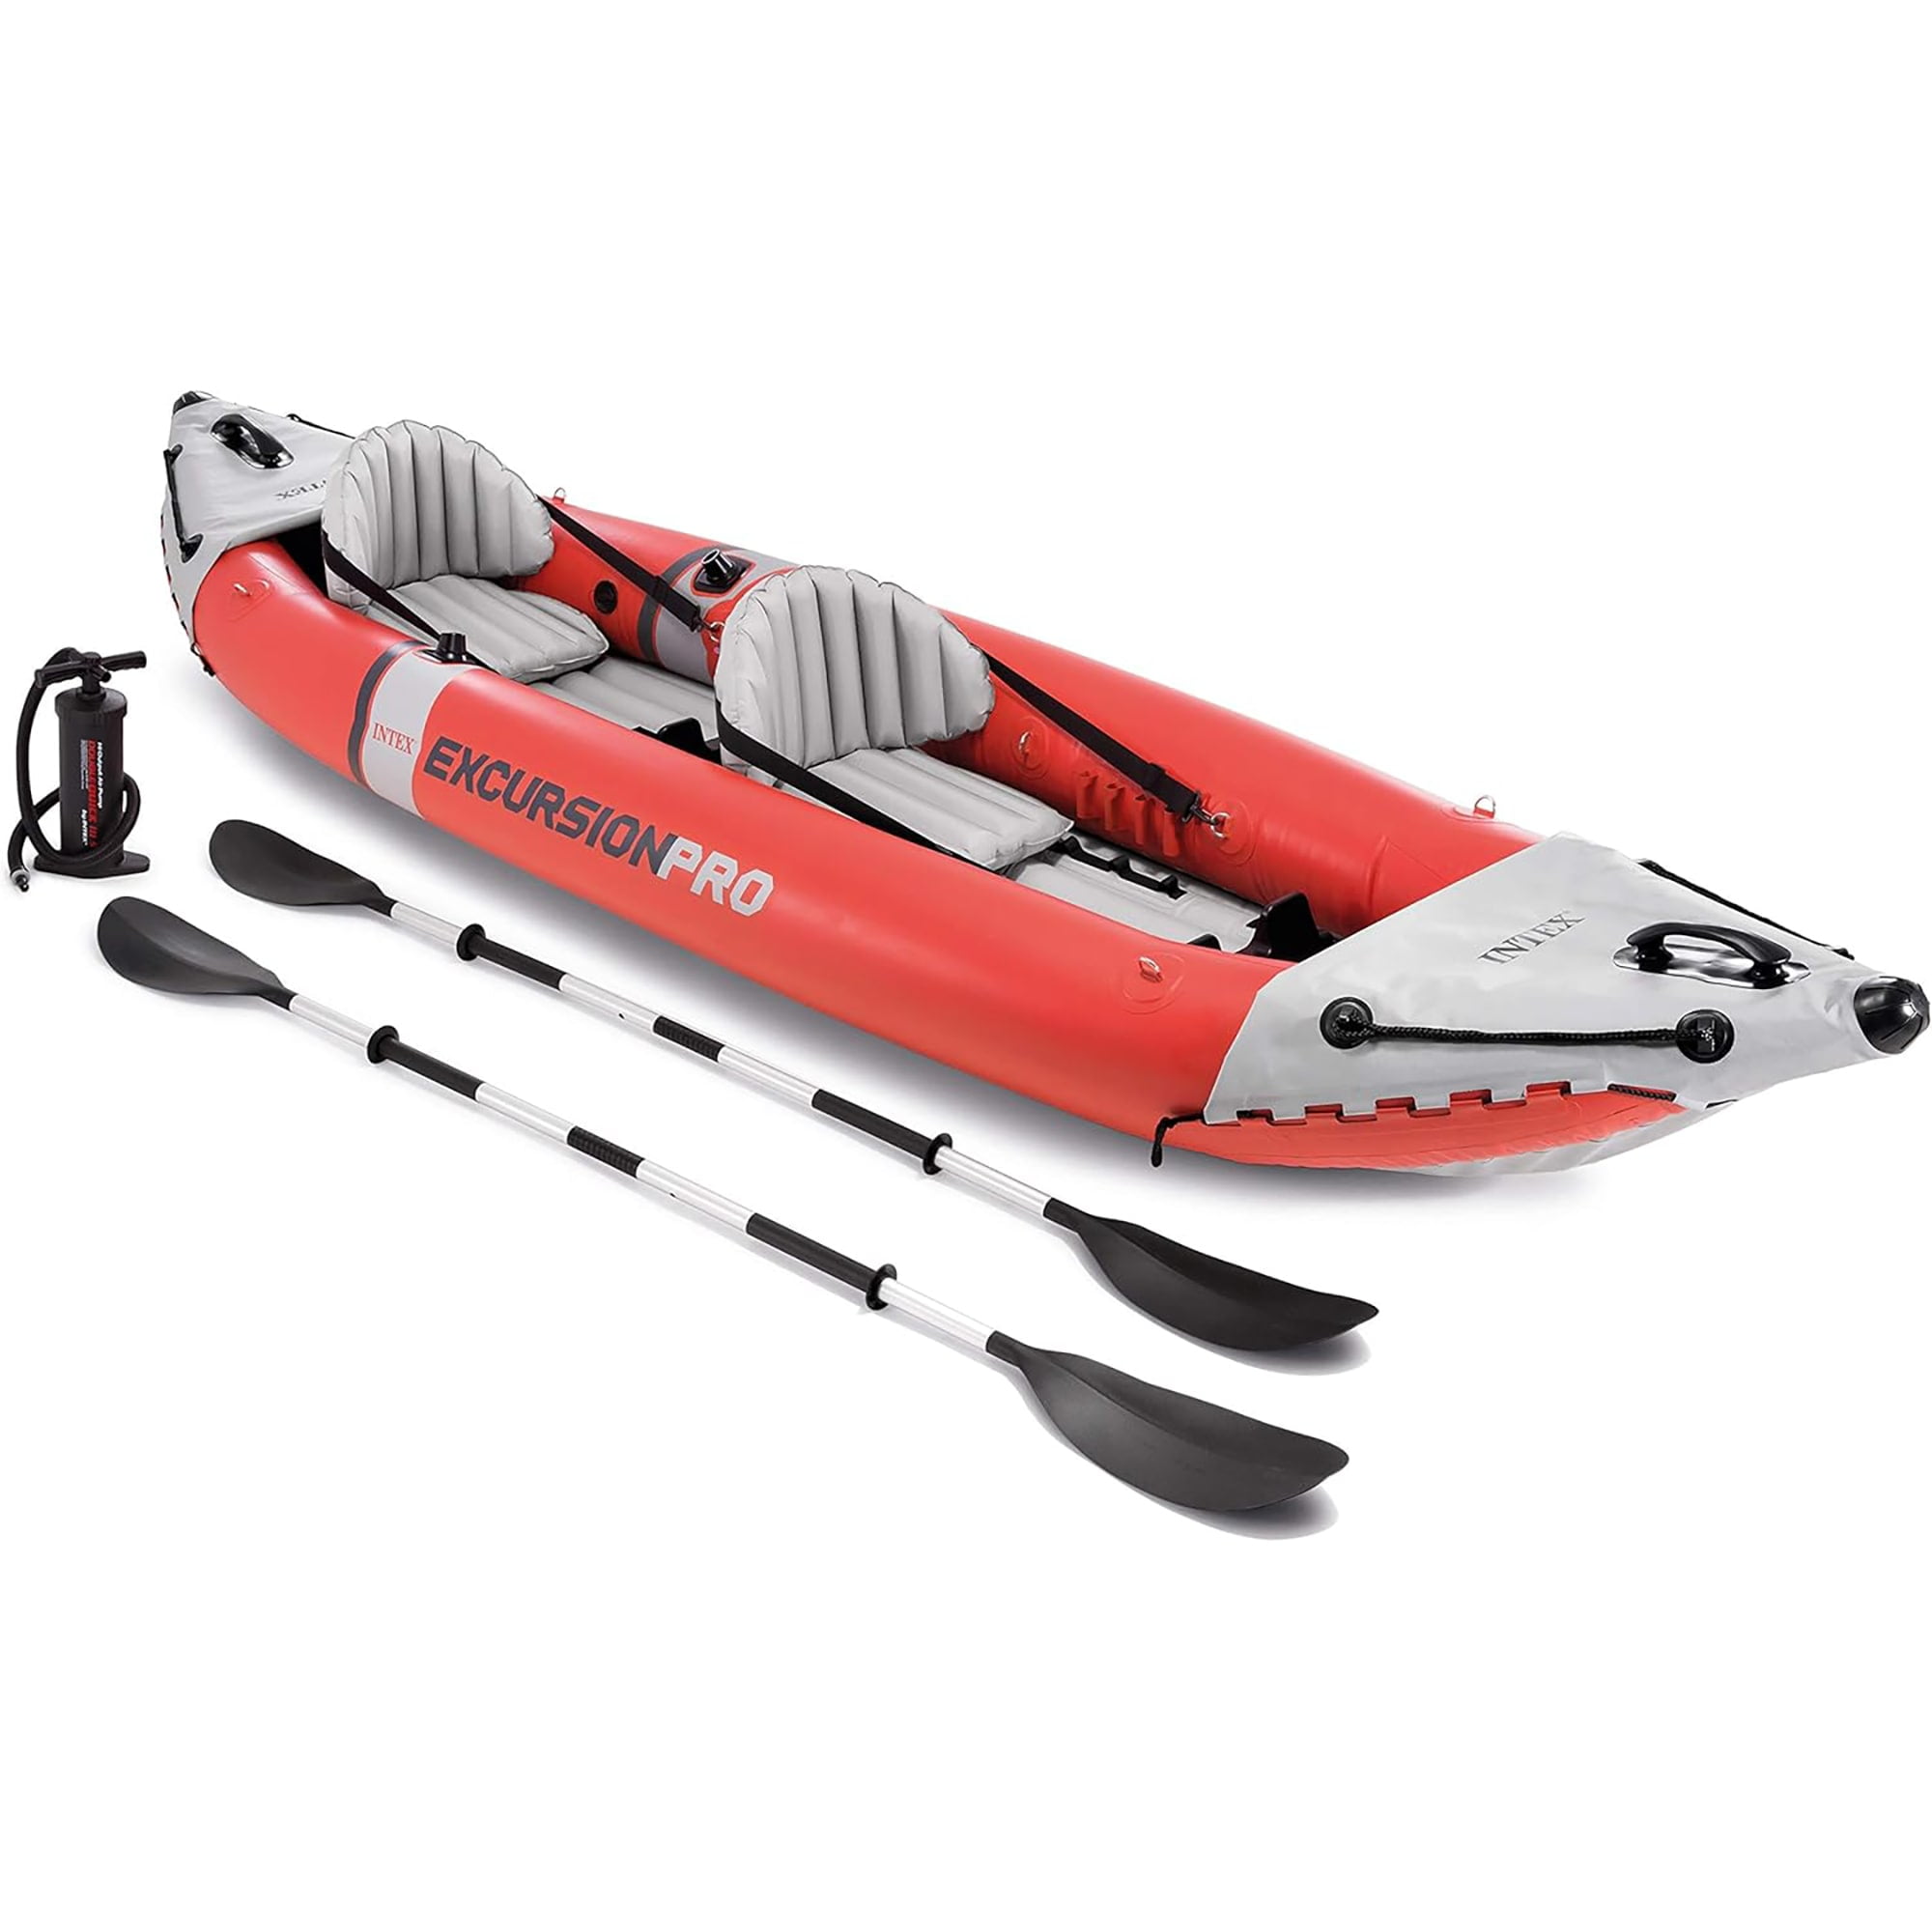 Inflatable Kayak Intex Excursion Pro K2